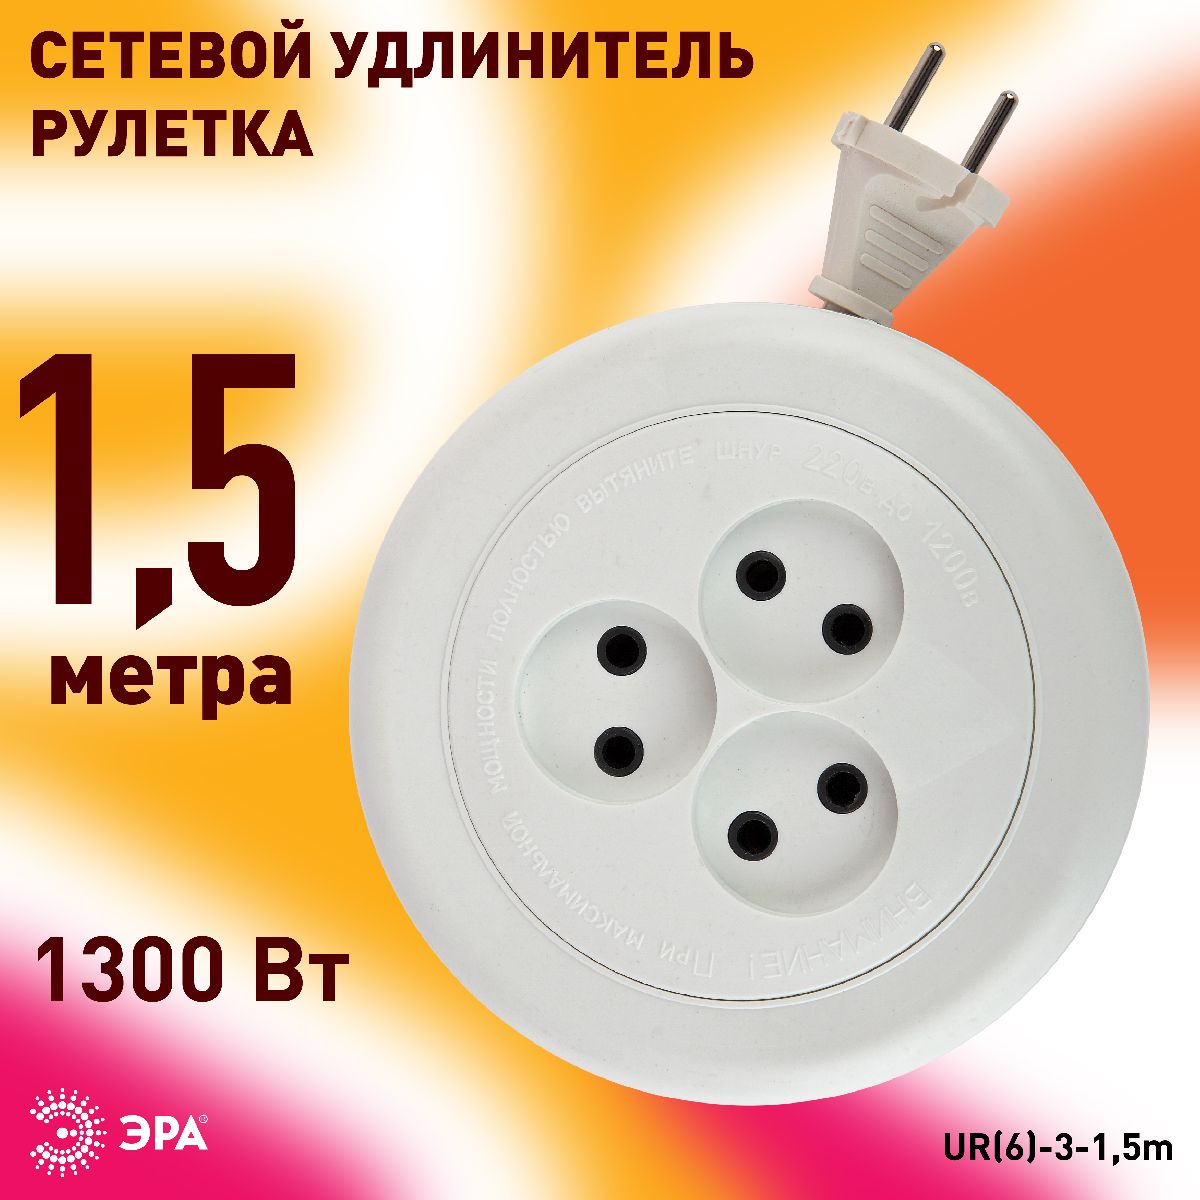 Удлинитель электрический Эра UR(6)-3-1,5m Б0035761